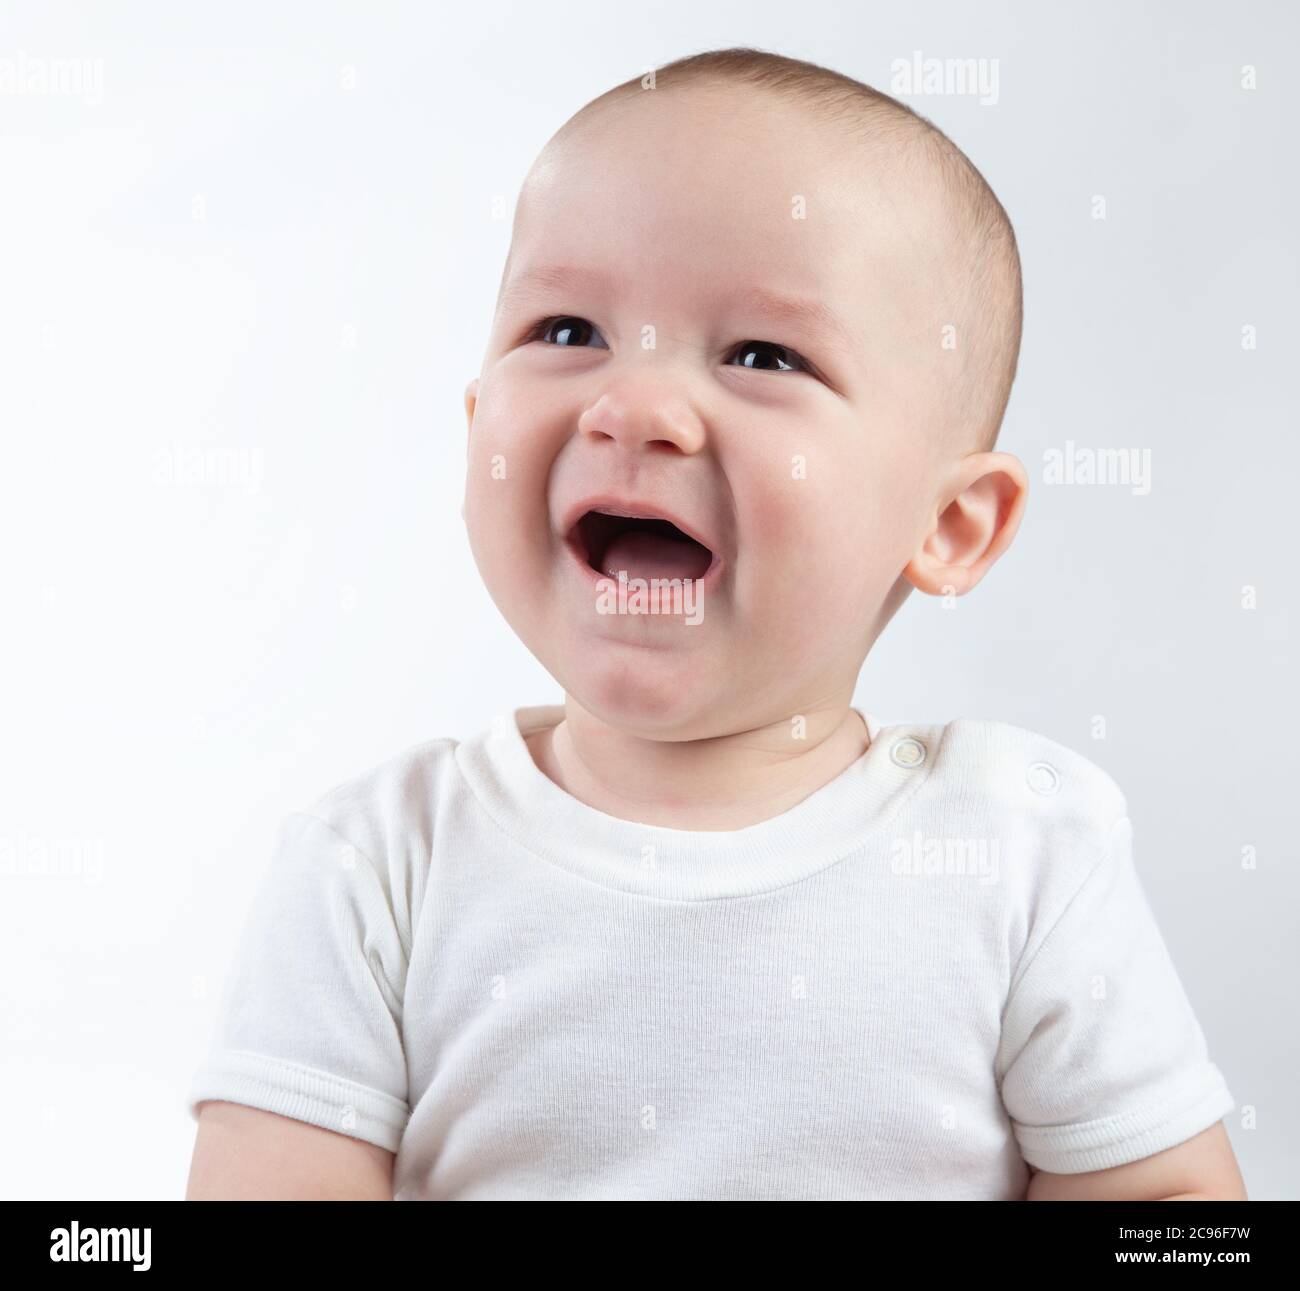 Portrait d'un bébé malheureux de neuf mois sur fond blanc Banque D'Images